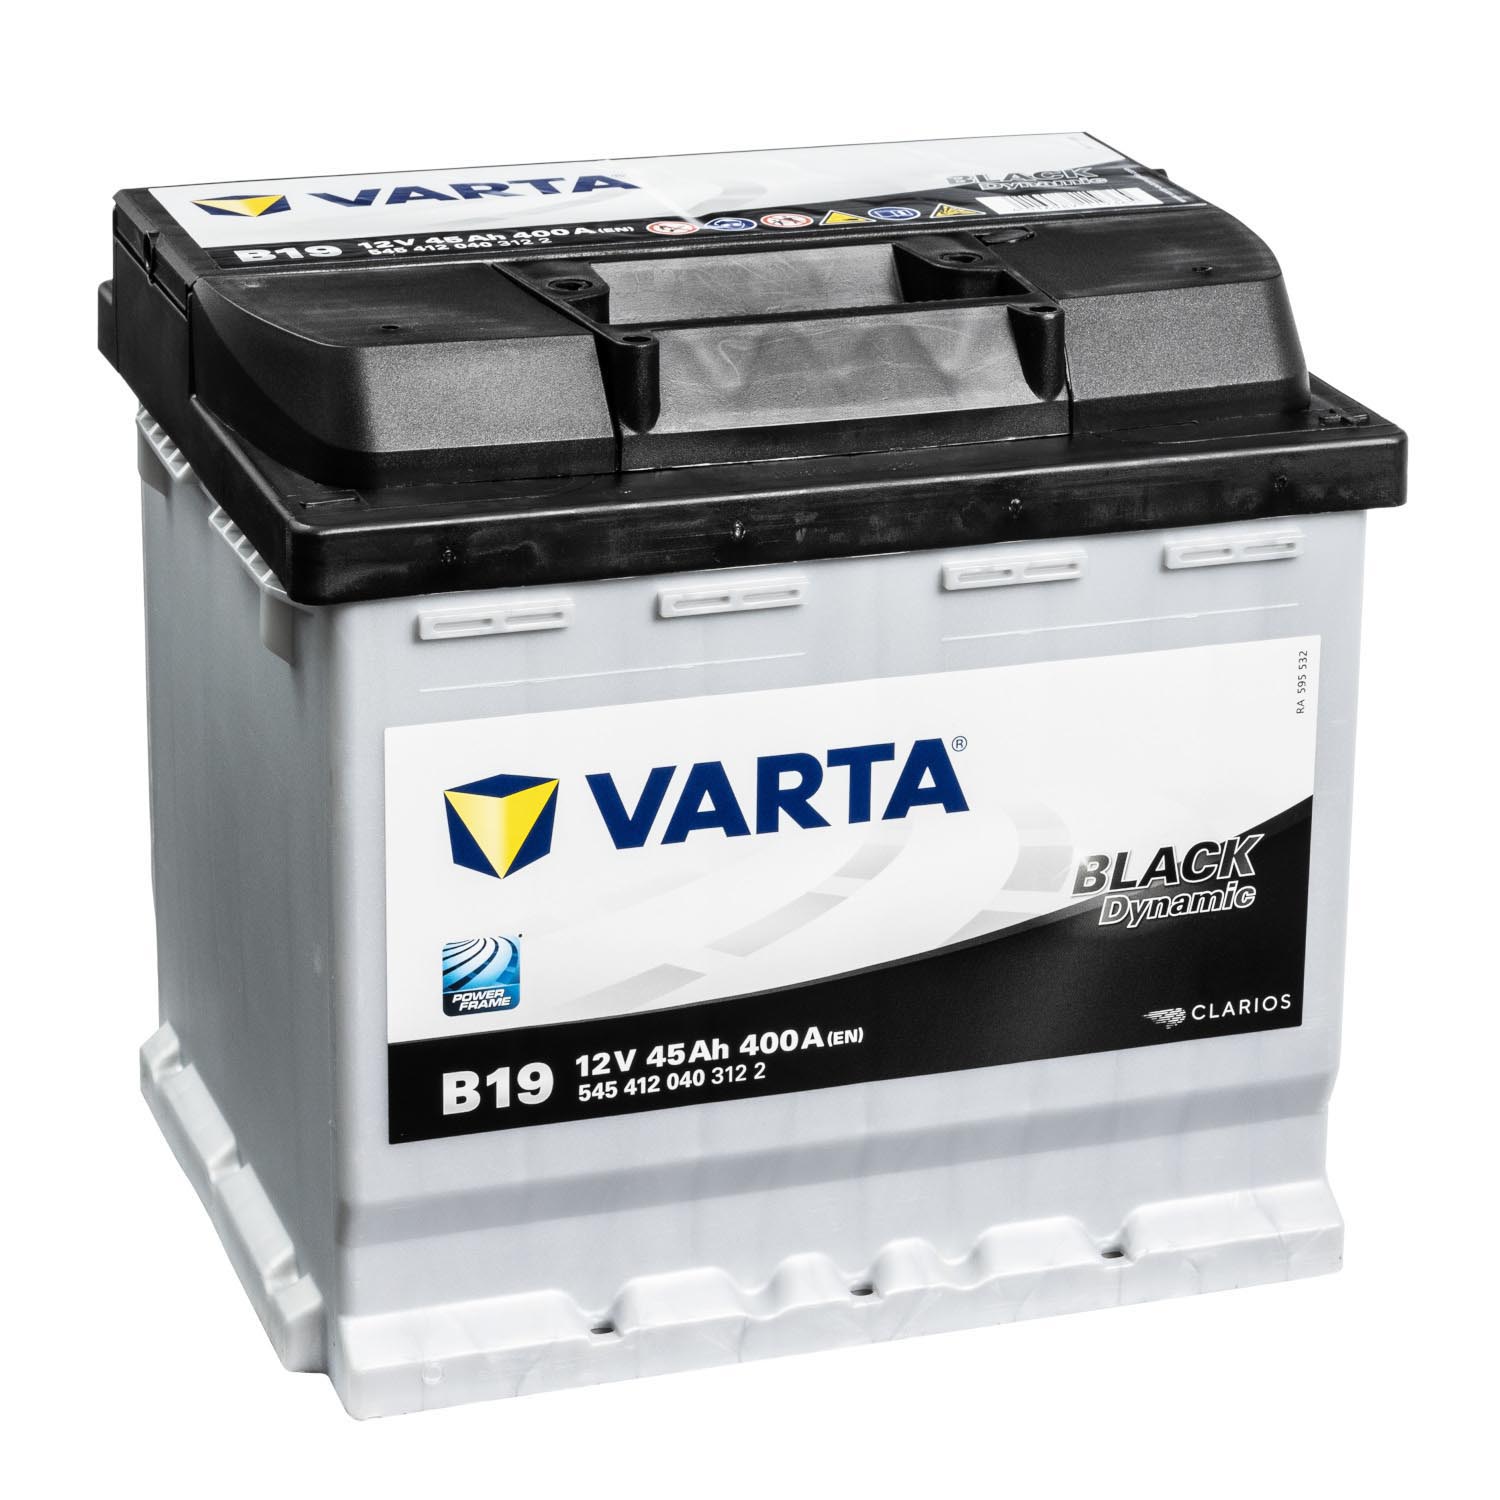 Varta Auto batterie Starterbatterie B19 12V 45Ah 400A Akku für